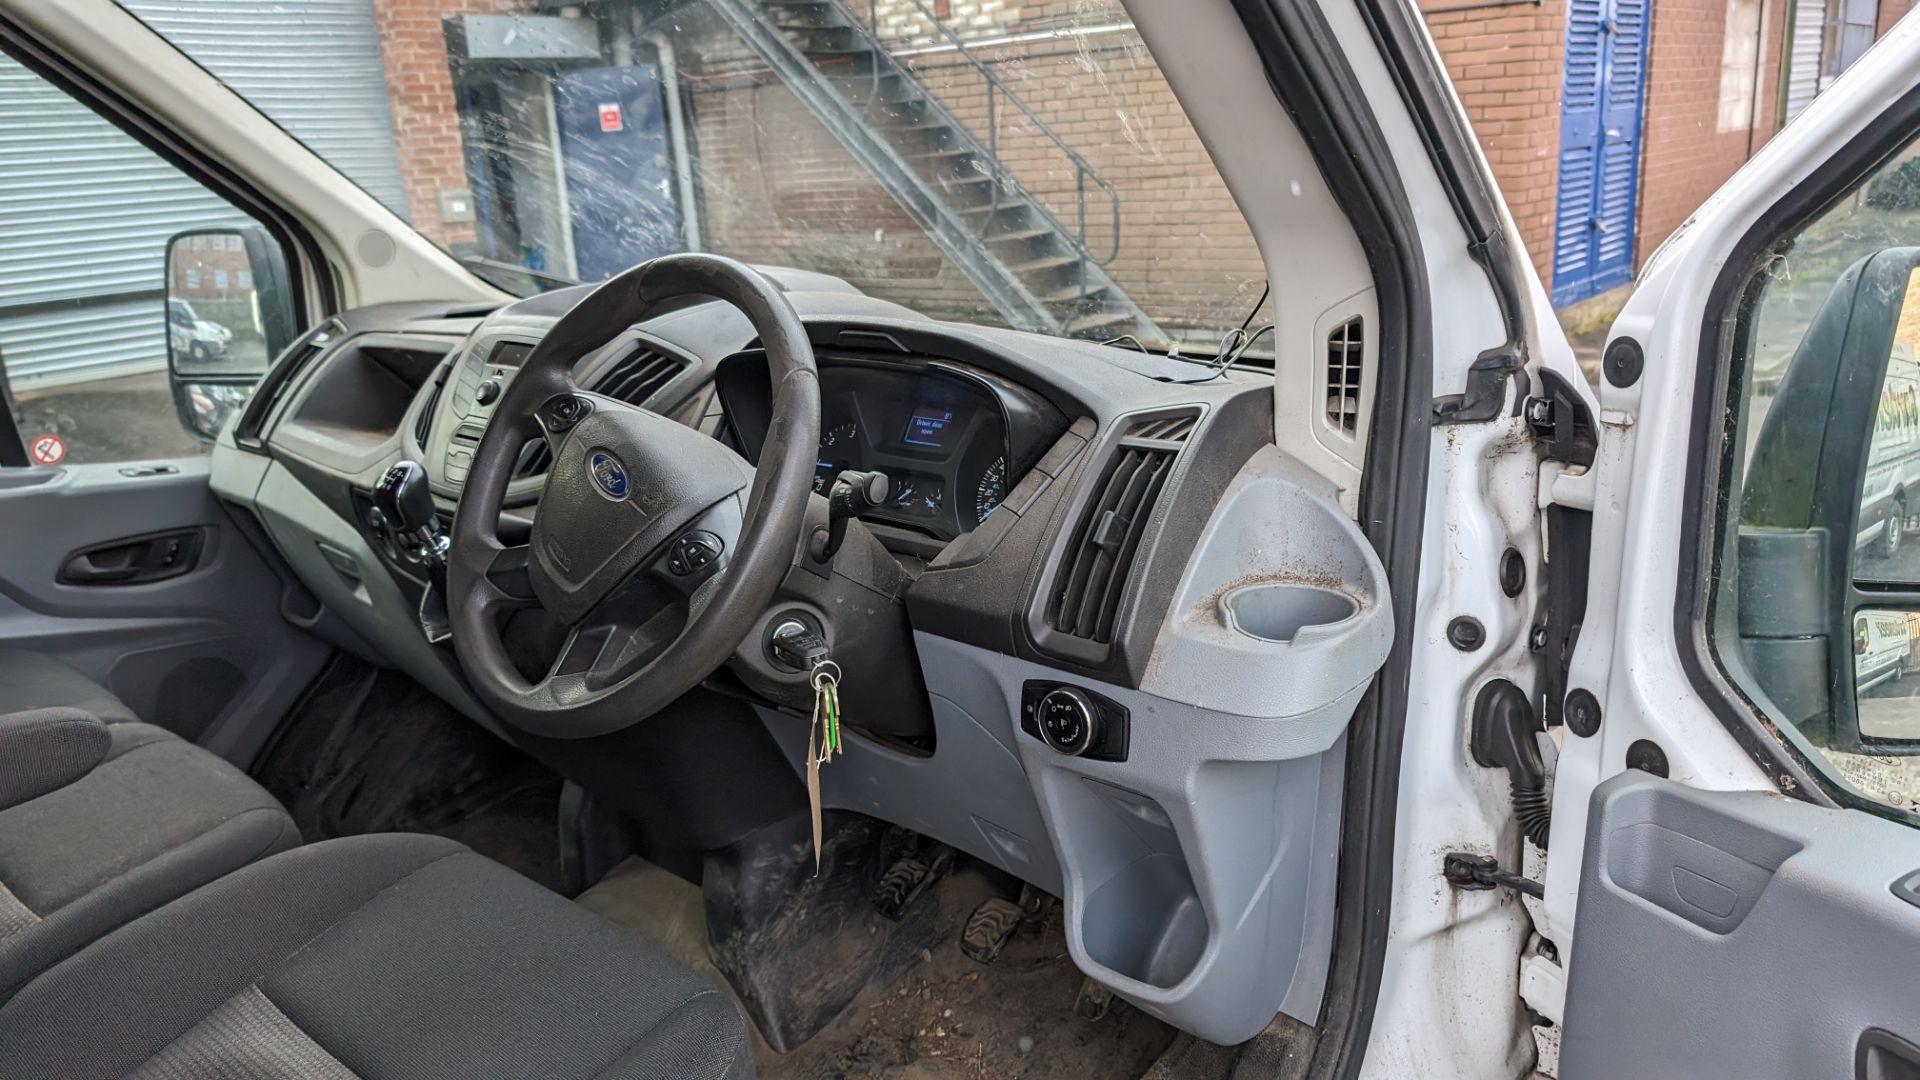 2015 Ford Transit van - Image 17 of 25